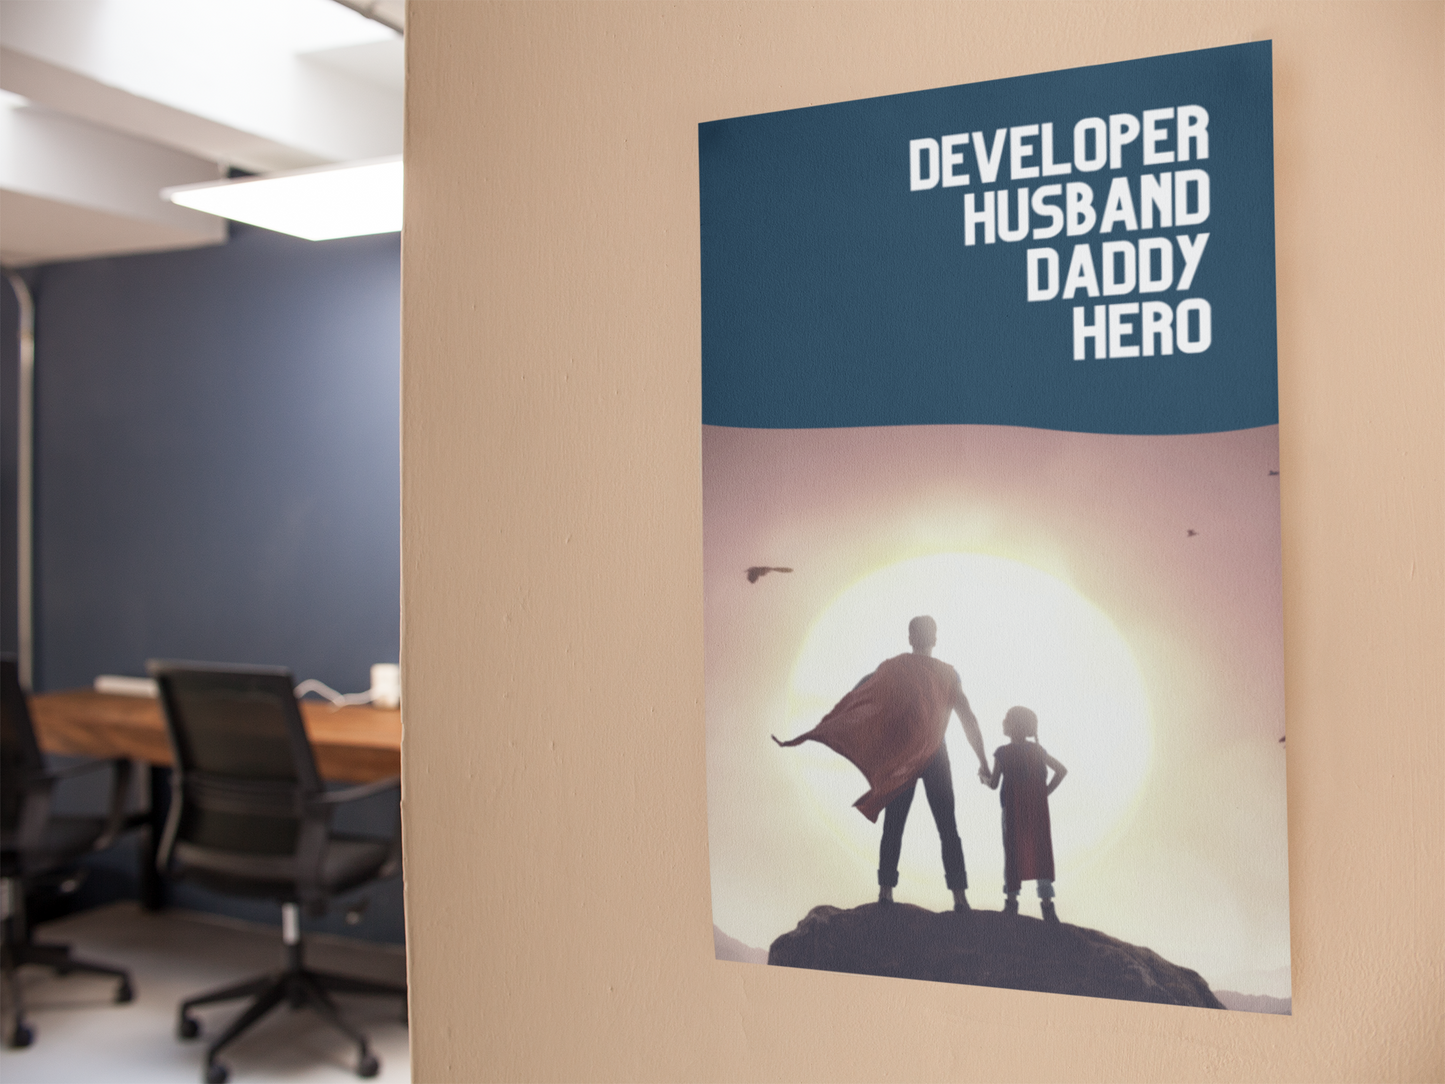 Developer, Husband, Daddy, Hero  - Programmer / Software Engineer / DevOps / Poster